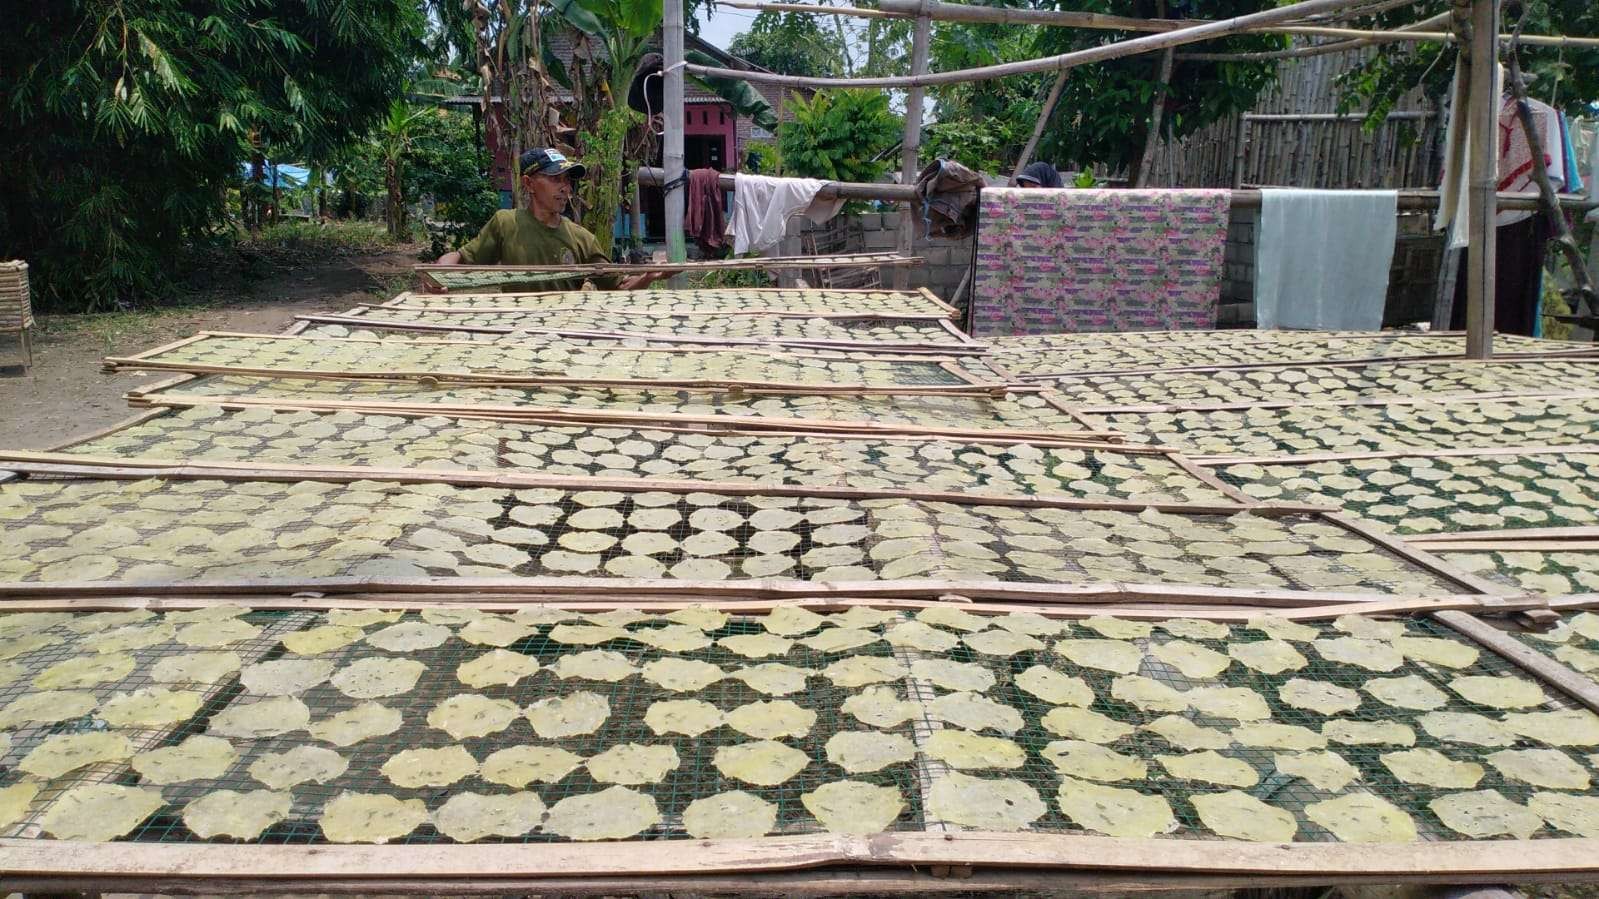 Kegiatan produksi kerupuk samiler di Desa Kayangan, Kecamatan Diwek, Kabupaten Jombang, Jawa Timur. Pangan olahan ini kerap diburu peziarah makam Gus Dur untuk dijadikan oleh-oleh. (Foto: Istimewa)